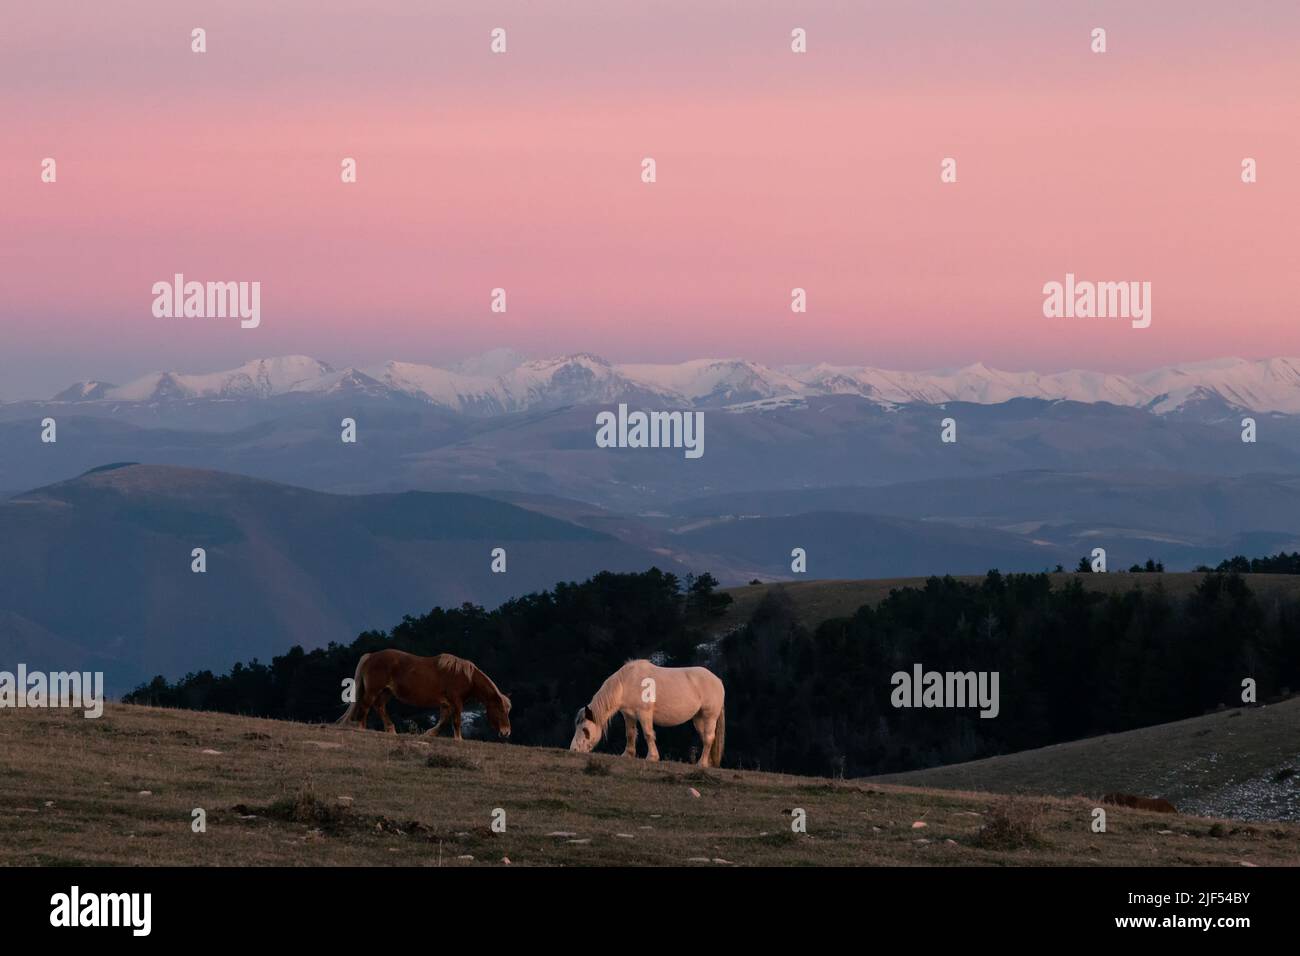 Une vache brune et une vache blanche qui se pastent sur une montagne au crépuscule , avec des montagnes enneigées et brumisées en arrière-plan Banque D'Images